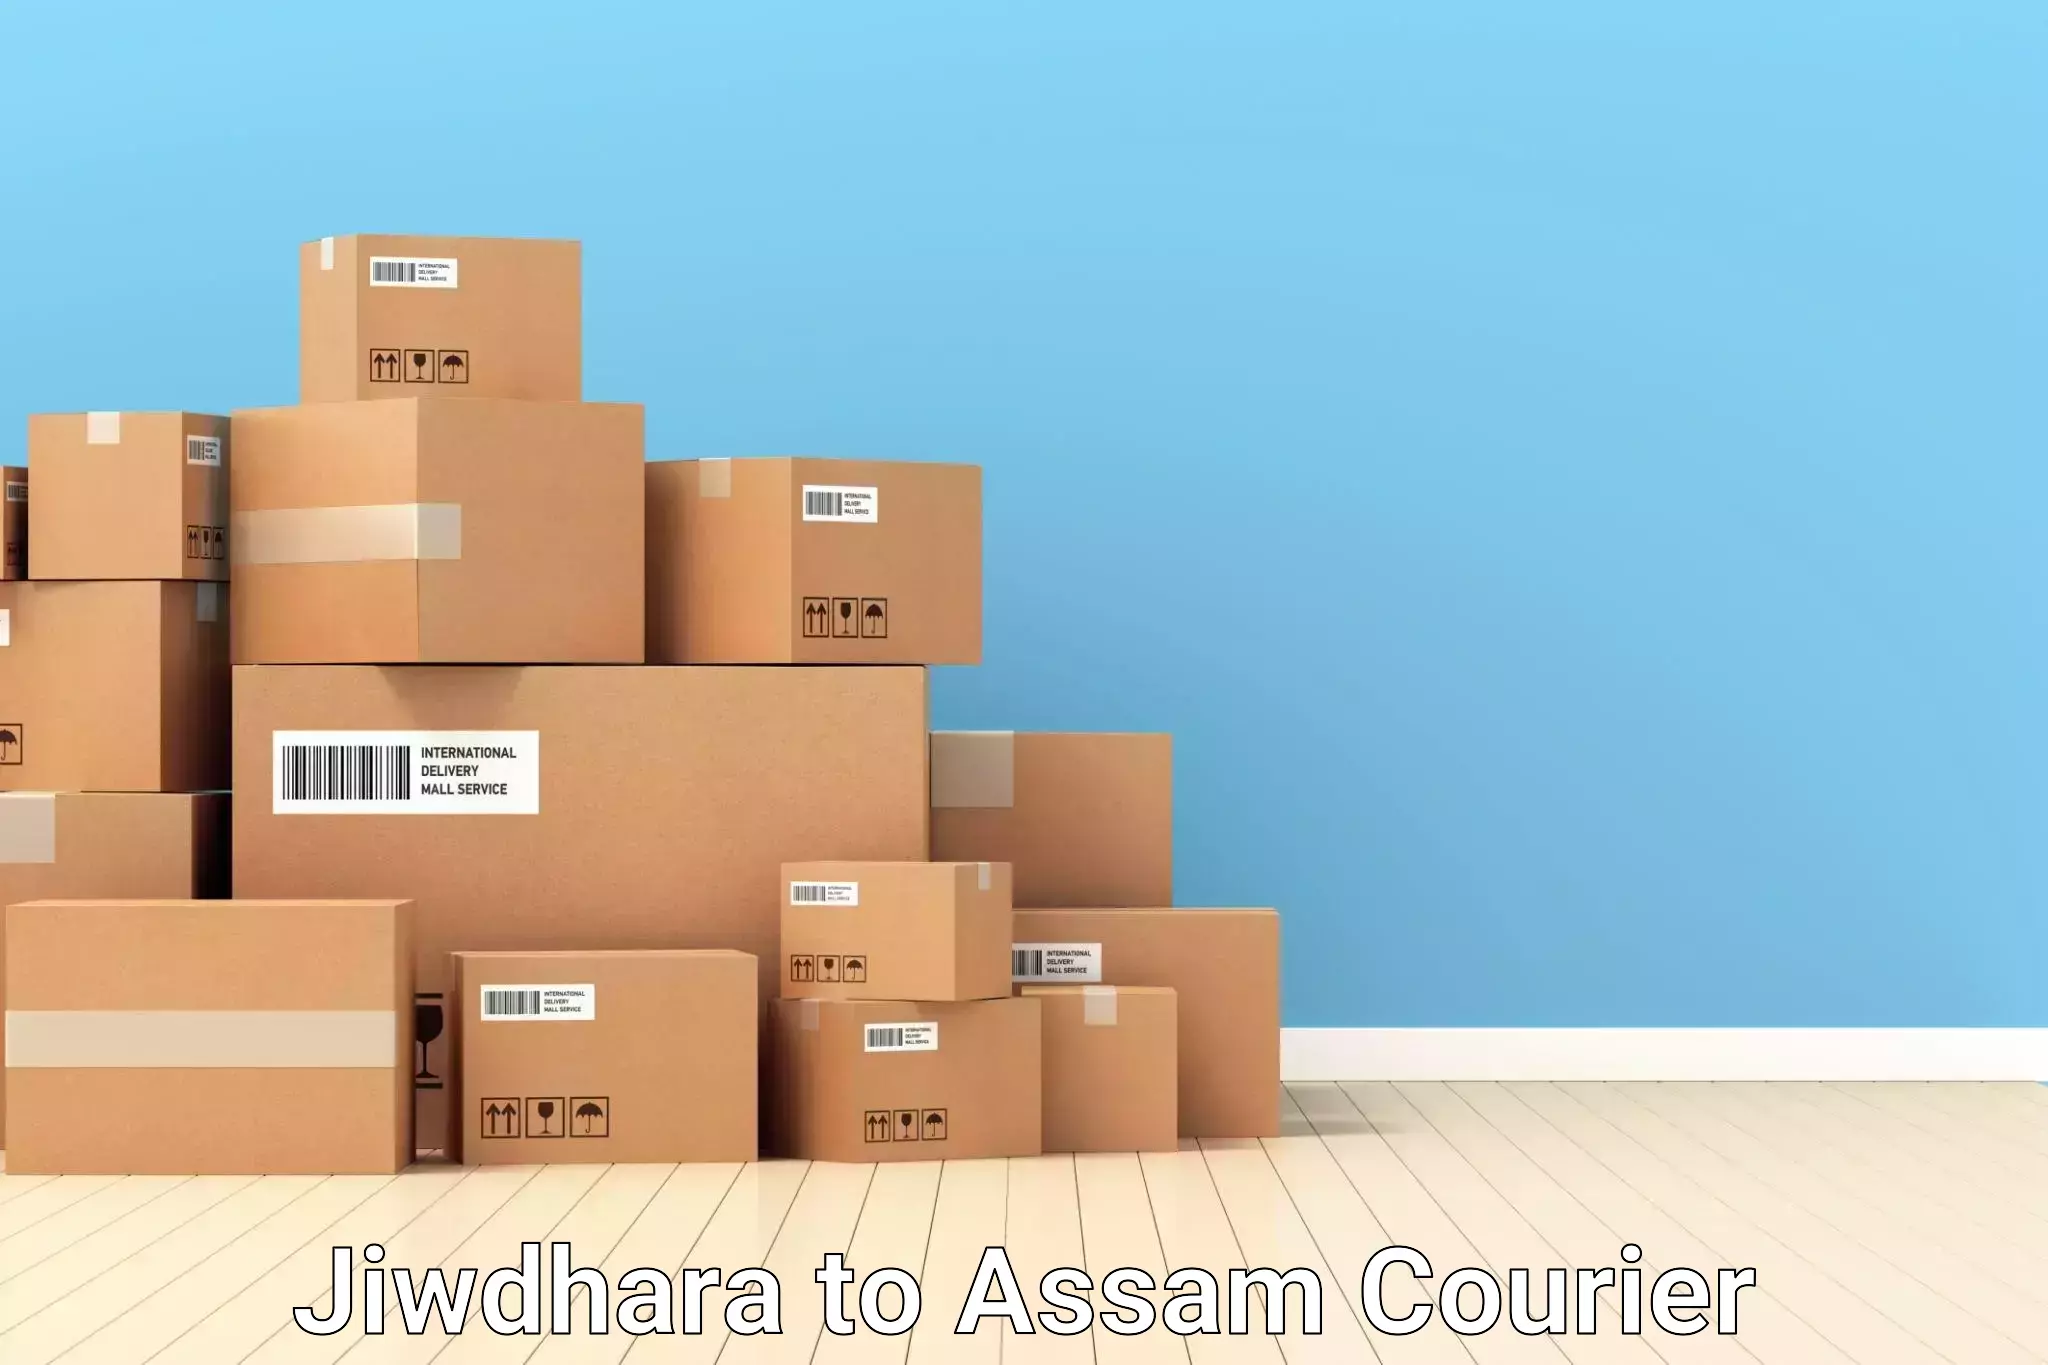 Baggage transport technology Jiwdhara to Lala Assam